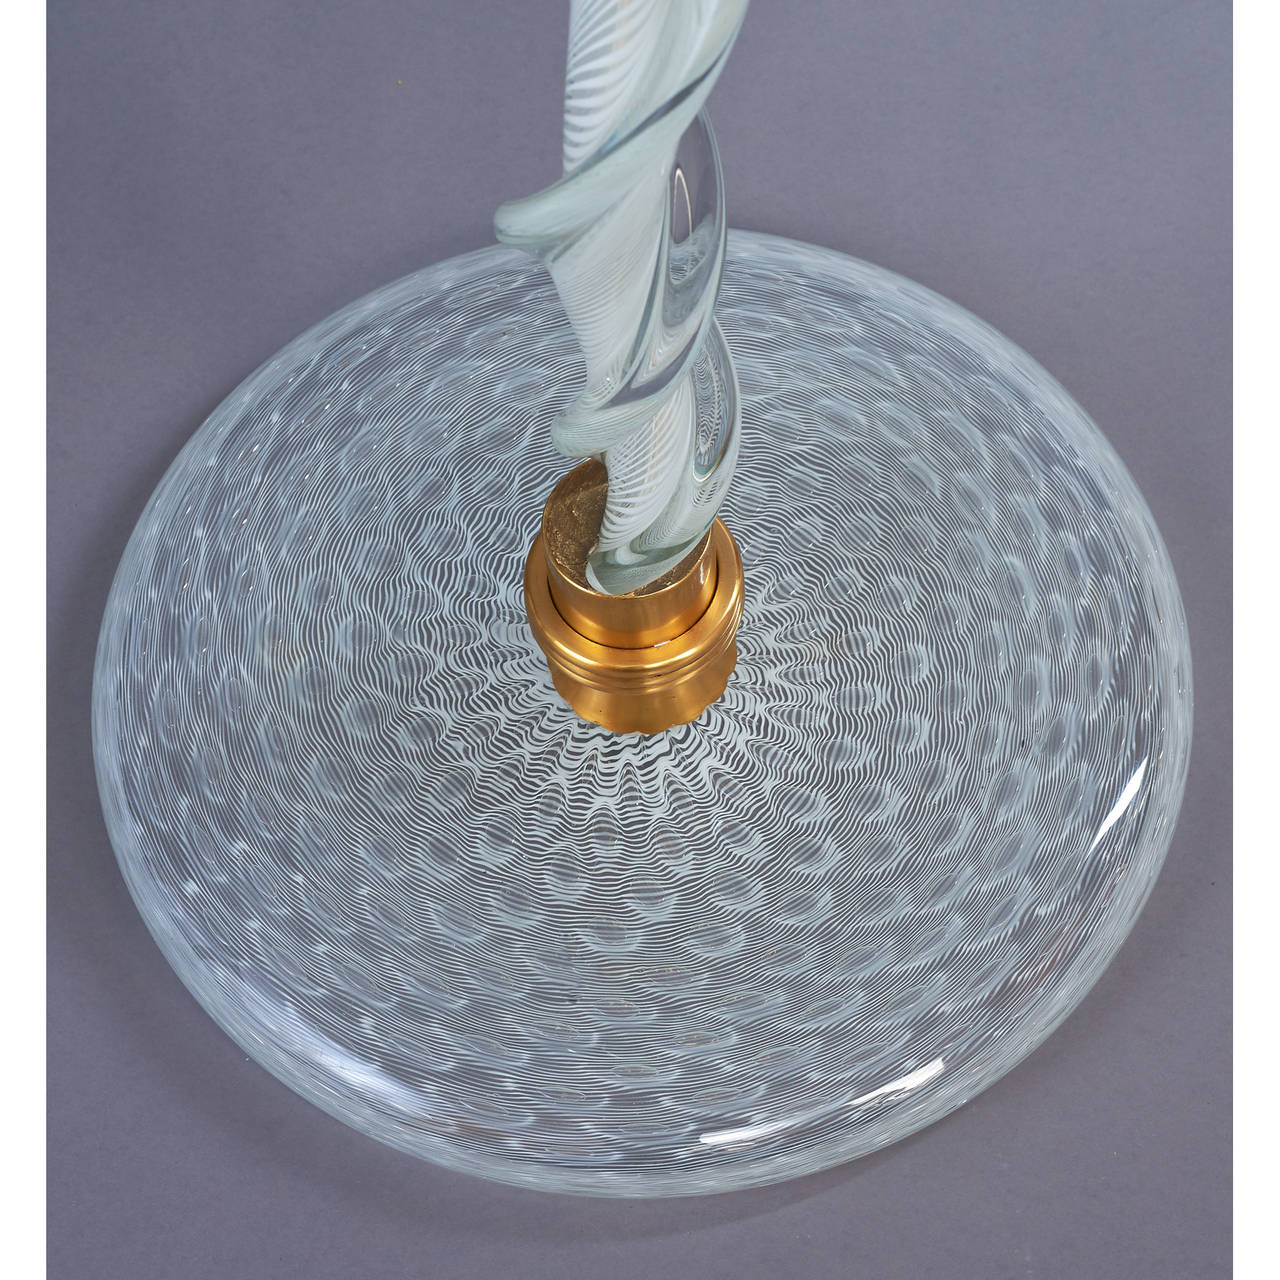 Venini, attribué à,
Important lampadaire en verre de Murano avec tige torsadée, filigrane blanc et verre soufflé avec un vaste motif de dentelle, montures en bronze,
Italie, vers 1950.
Dimensions : 79 de hauteur x 25 de diamètre.
Recâblée pour une